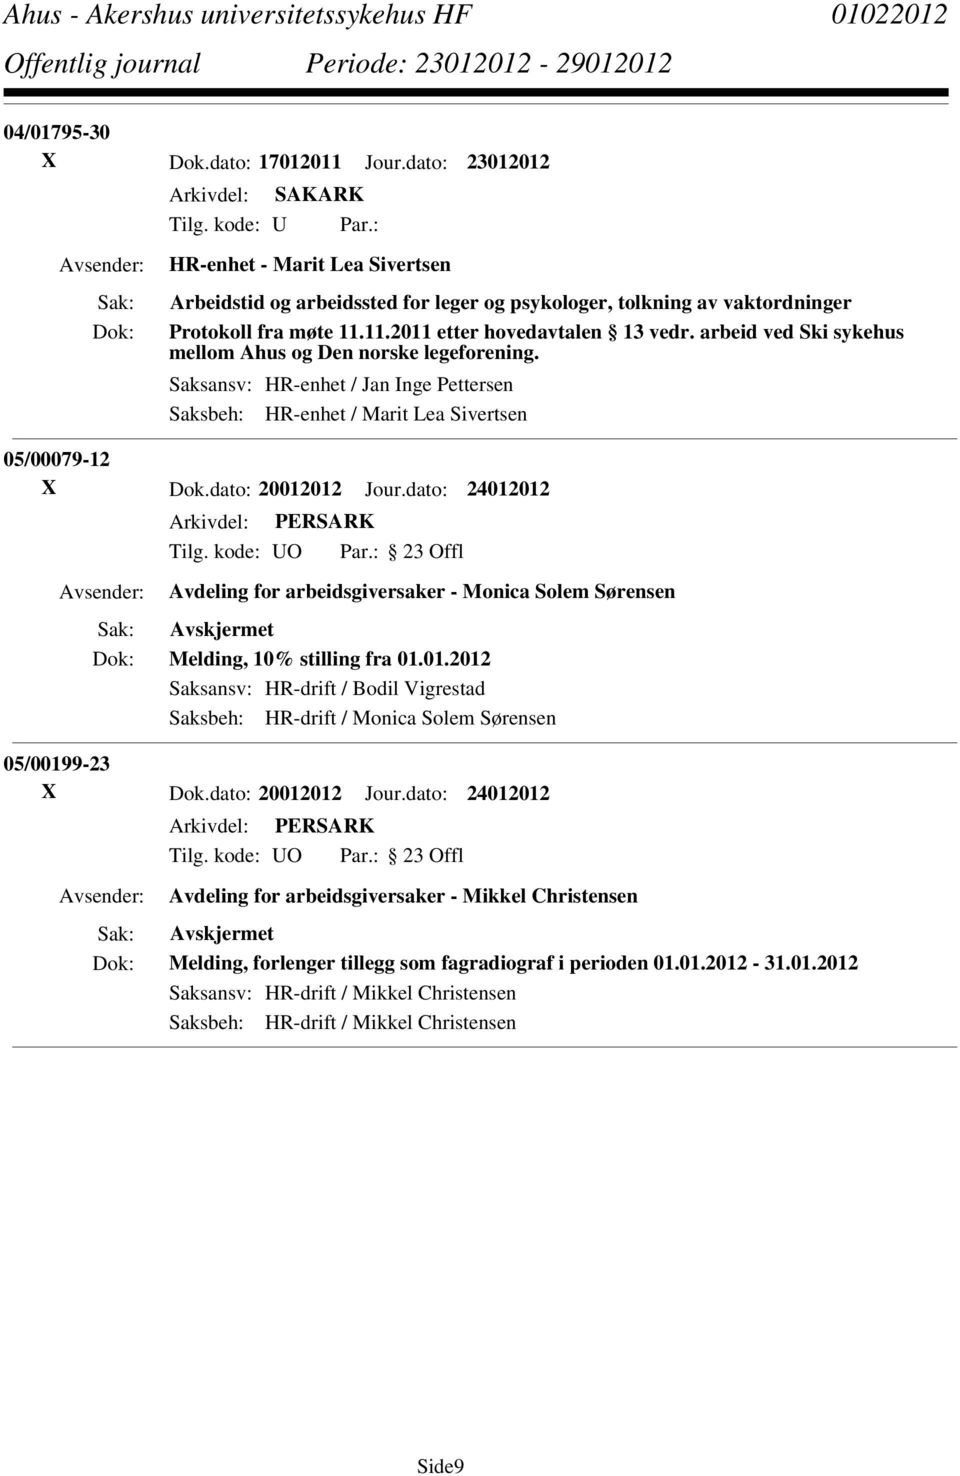 arbeid ved Ski sykehus mellom Ahus og Den norske legeforening. Saksansv: HR-enhet / Jan Inge Pettersen Saksbeh: HR-enhet / Marit Lea Sivertsen 05/00079-12 X Dok.dato: 20012012 Jour.